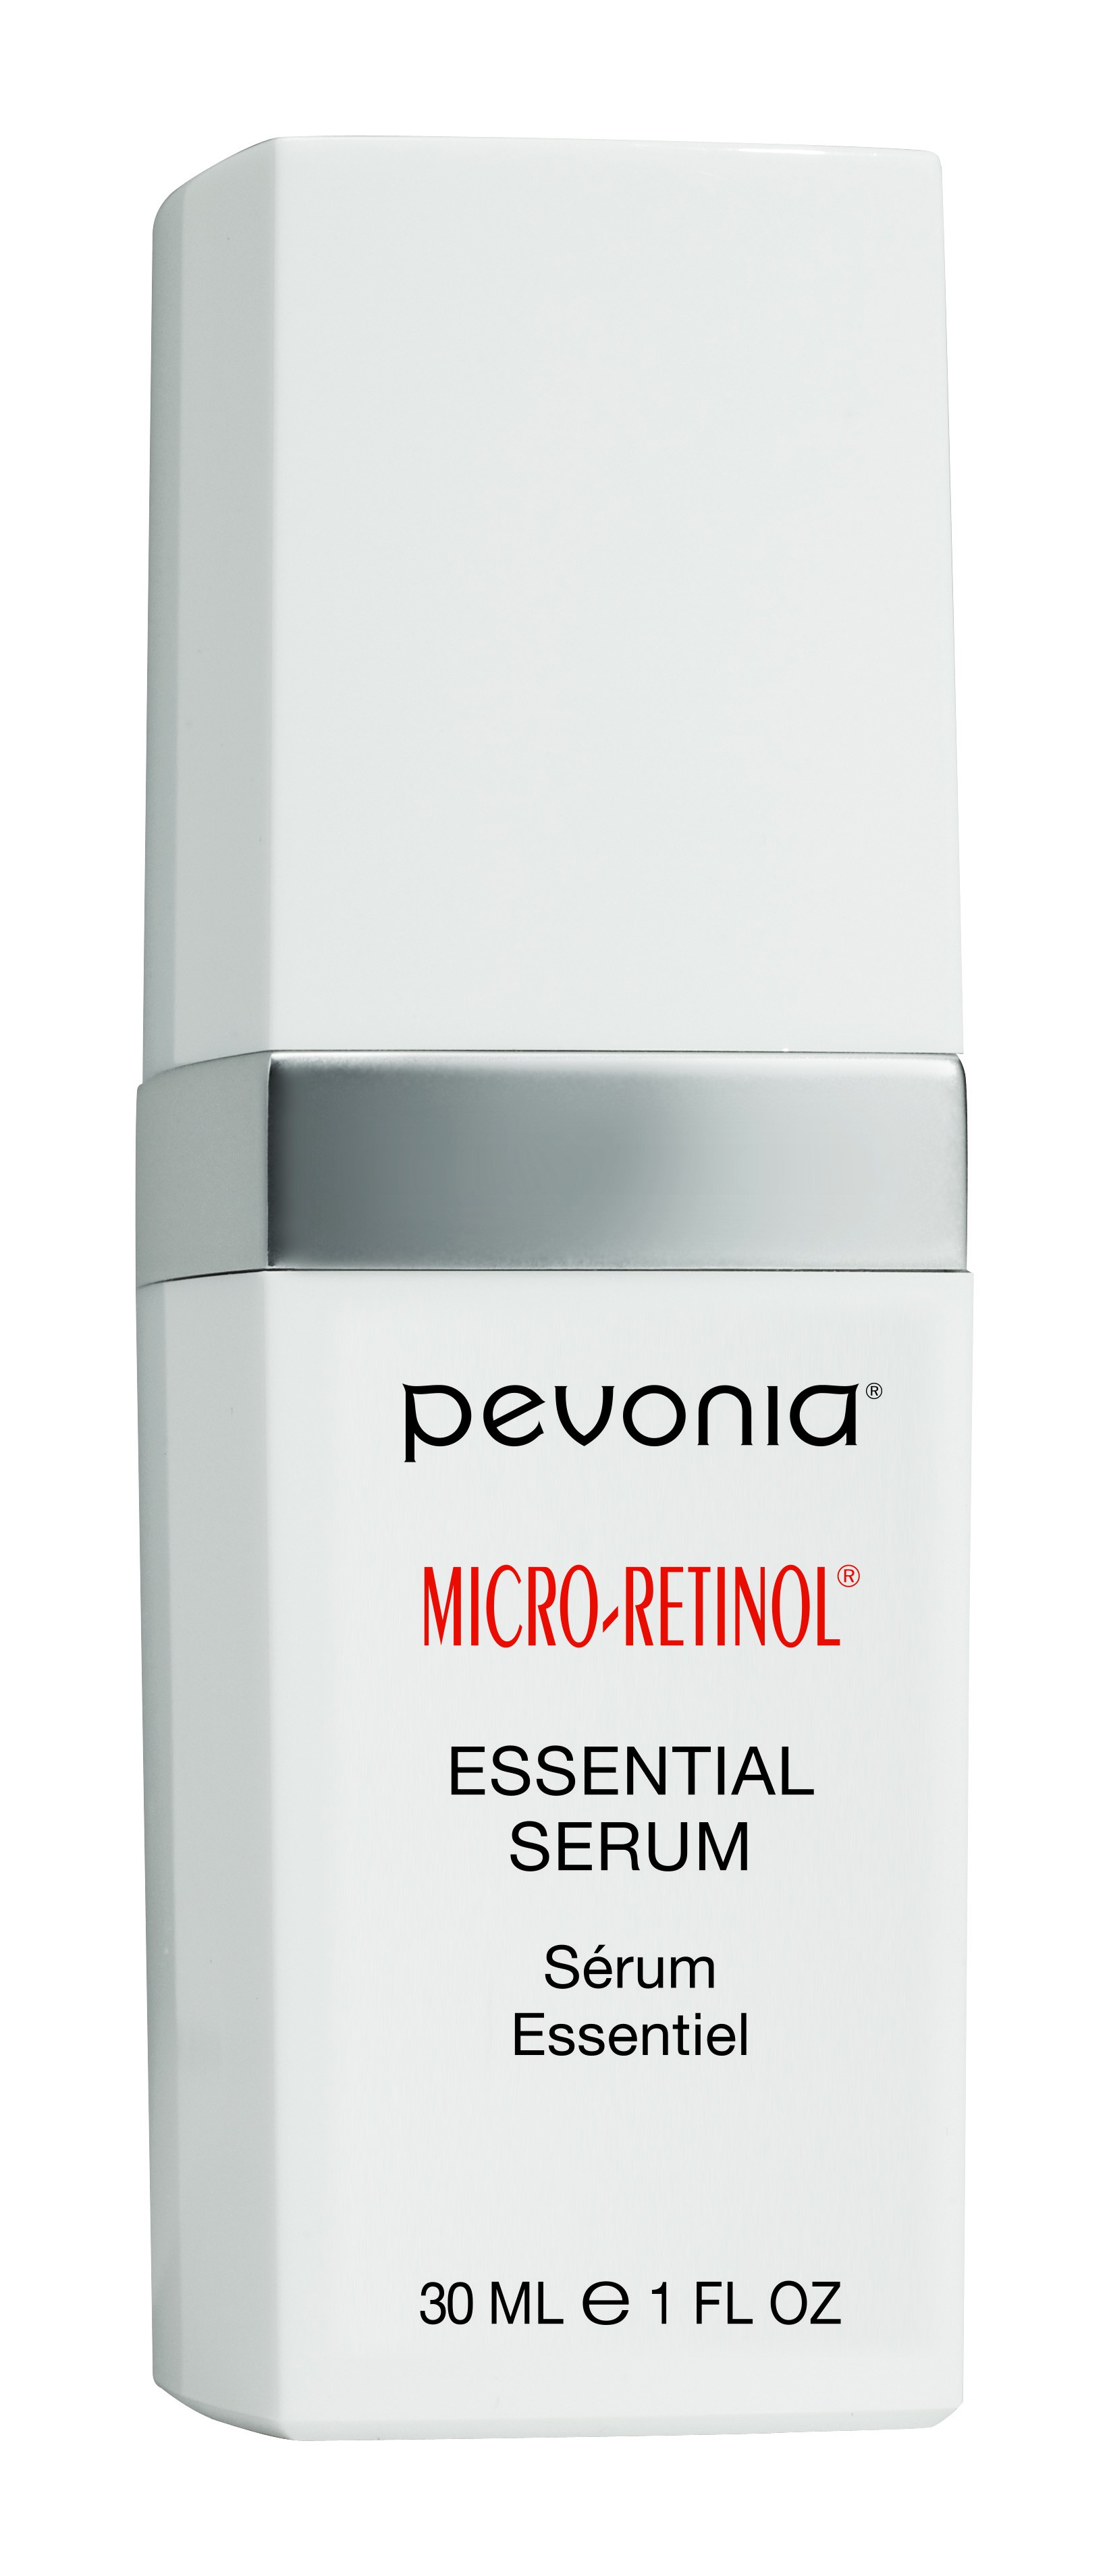 Ser Microemulsificat cu Retinol 30ml - Micro Retinol Essential Serum - Pevonia